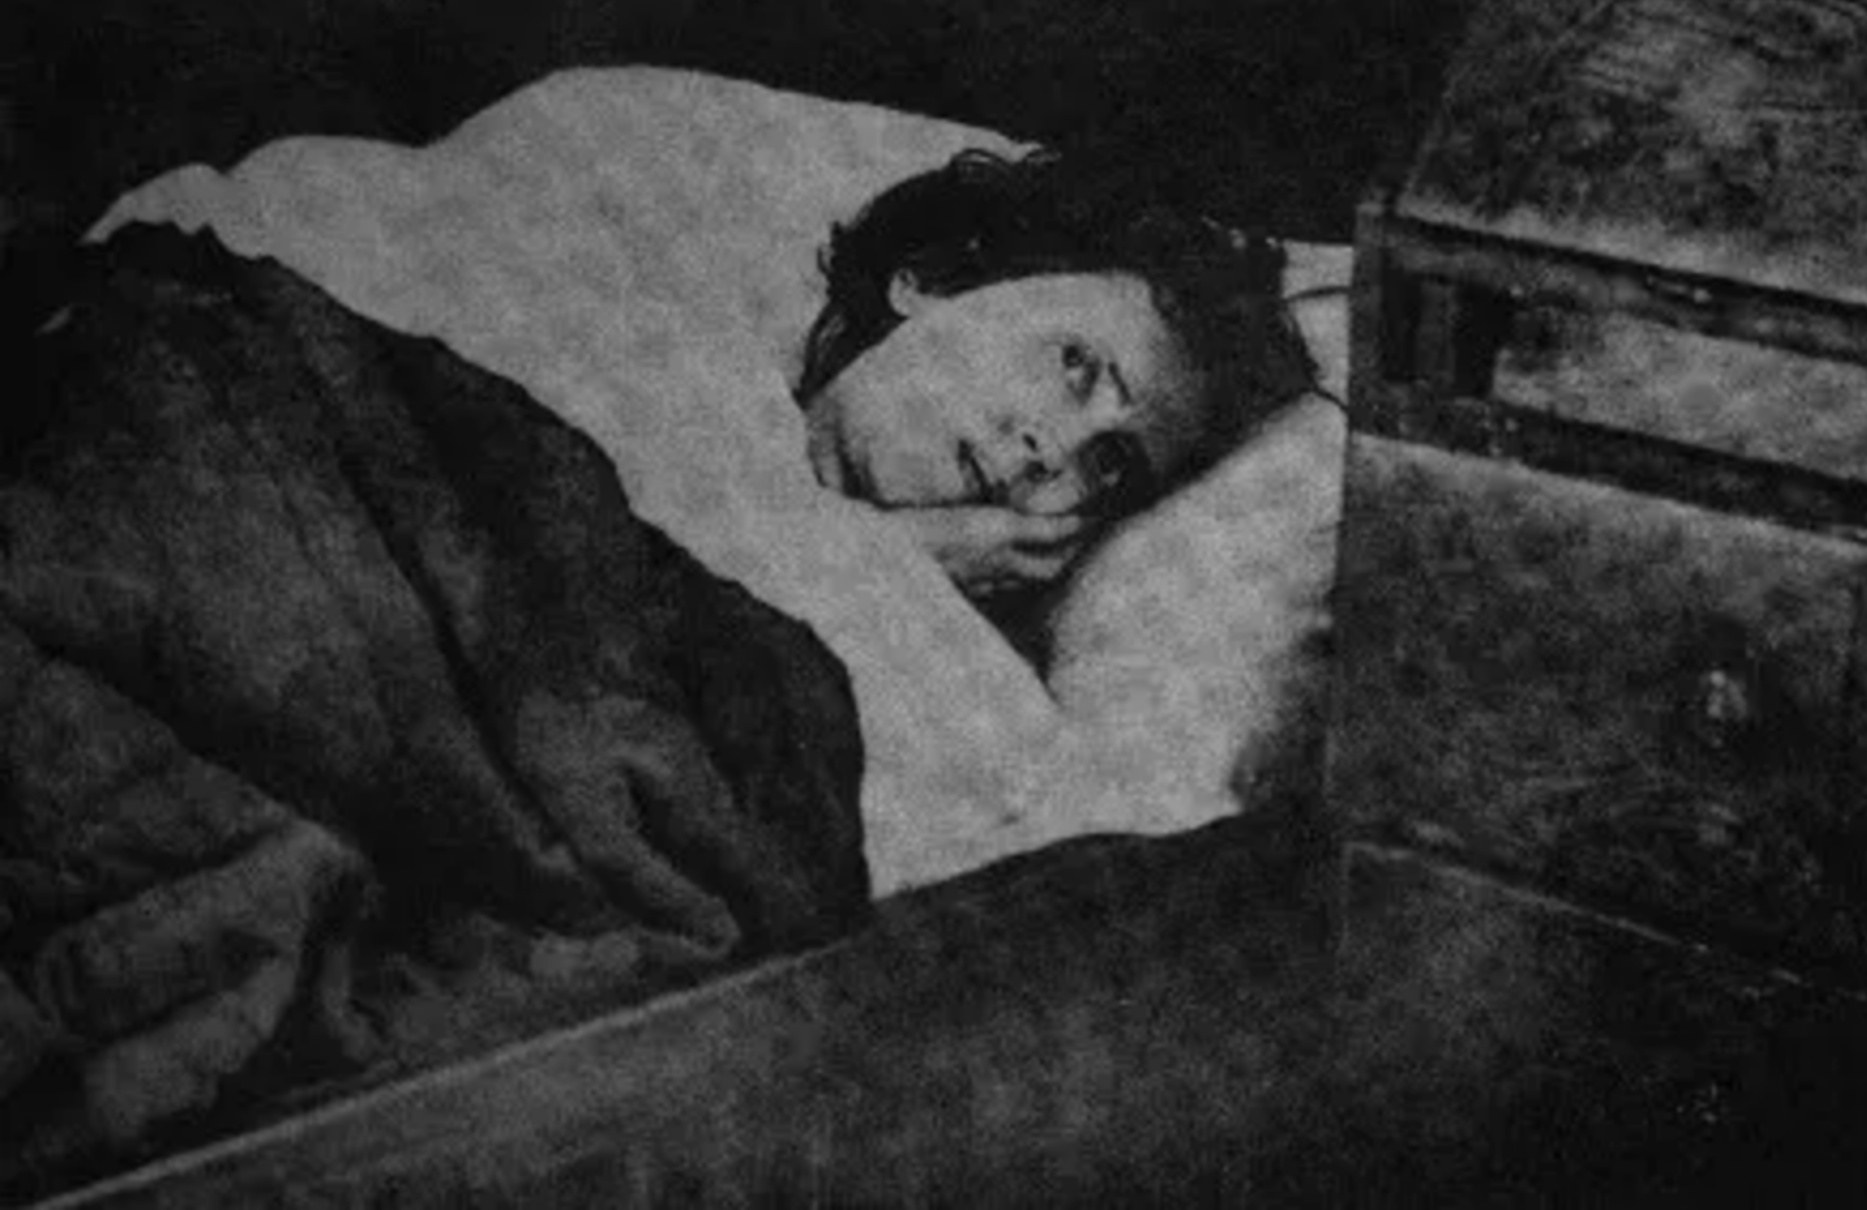 Karolina Olsson (29 de octubre de 1861 - 5 de abril de 1950), también conocida como "Soverskan på Oknö" ("La durmiente de Oknö"), fue una mujer sueca que supuestamente permaneció en hibernación entre 1876 y 1908 (32 años). Se cree que este es el tiempo más largo que alguien ha vivido de esta manera y luego se despertó sin ningún síntoma residual.